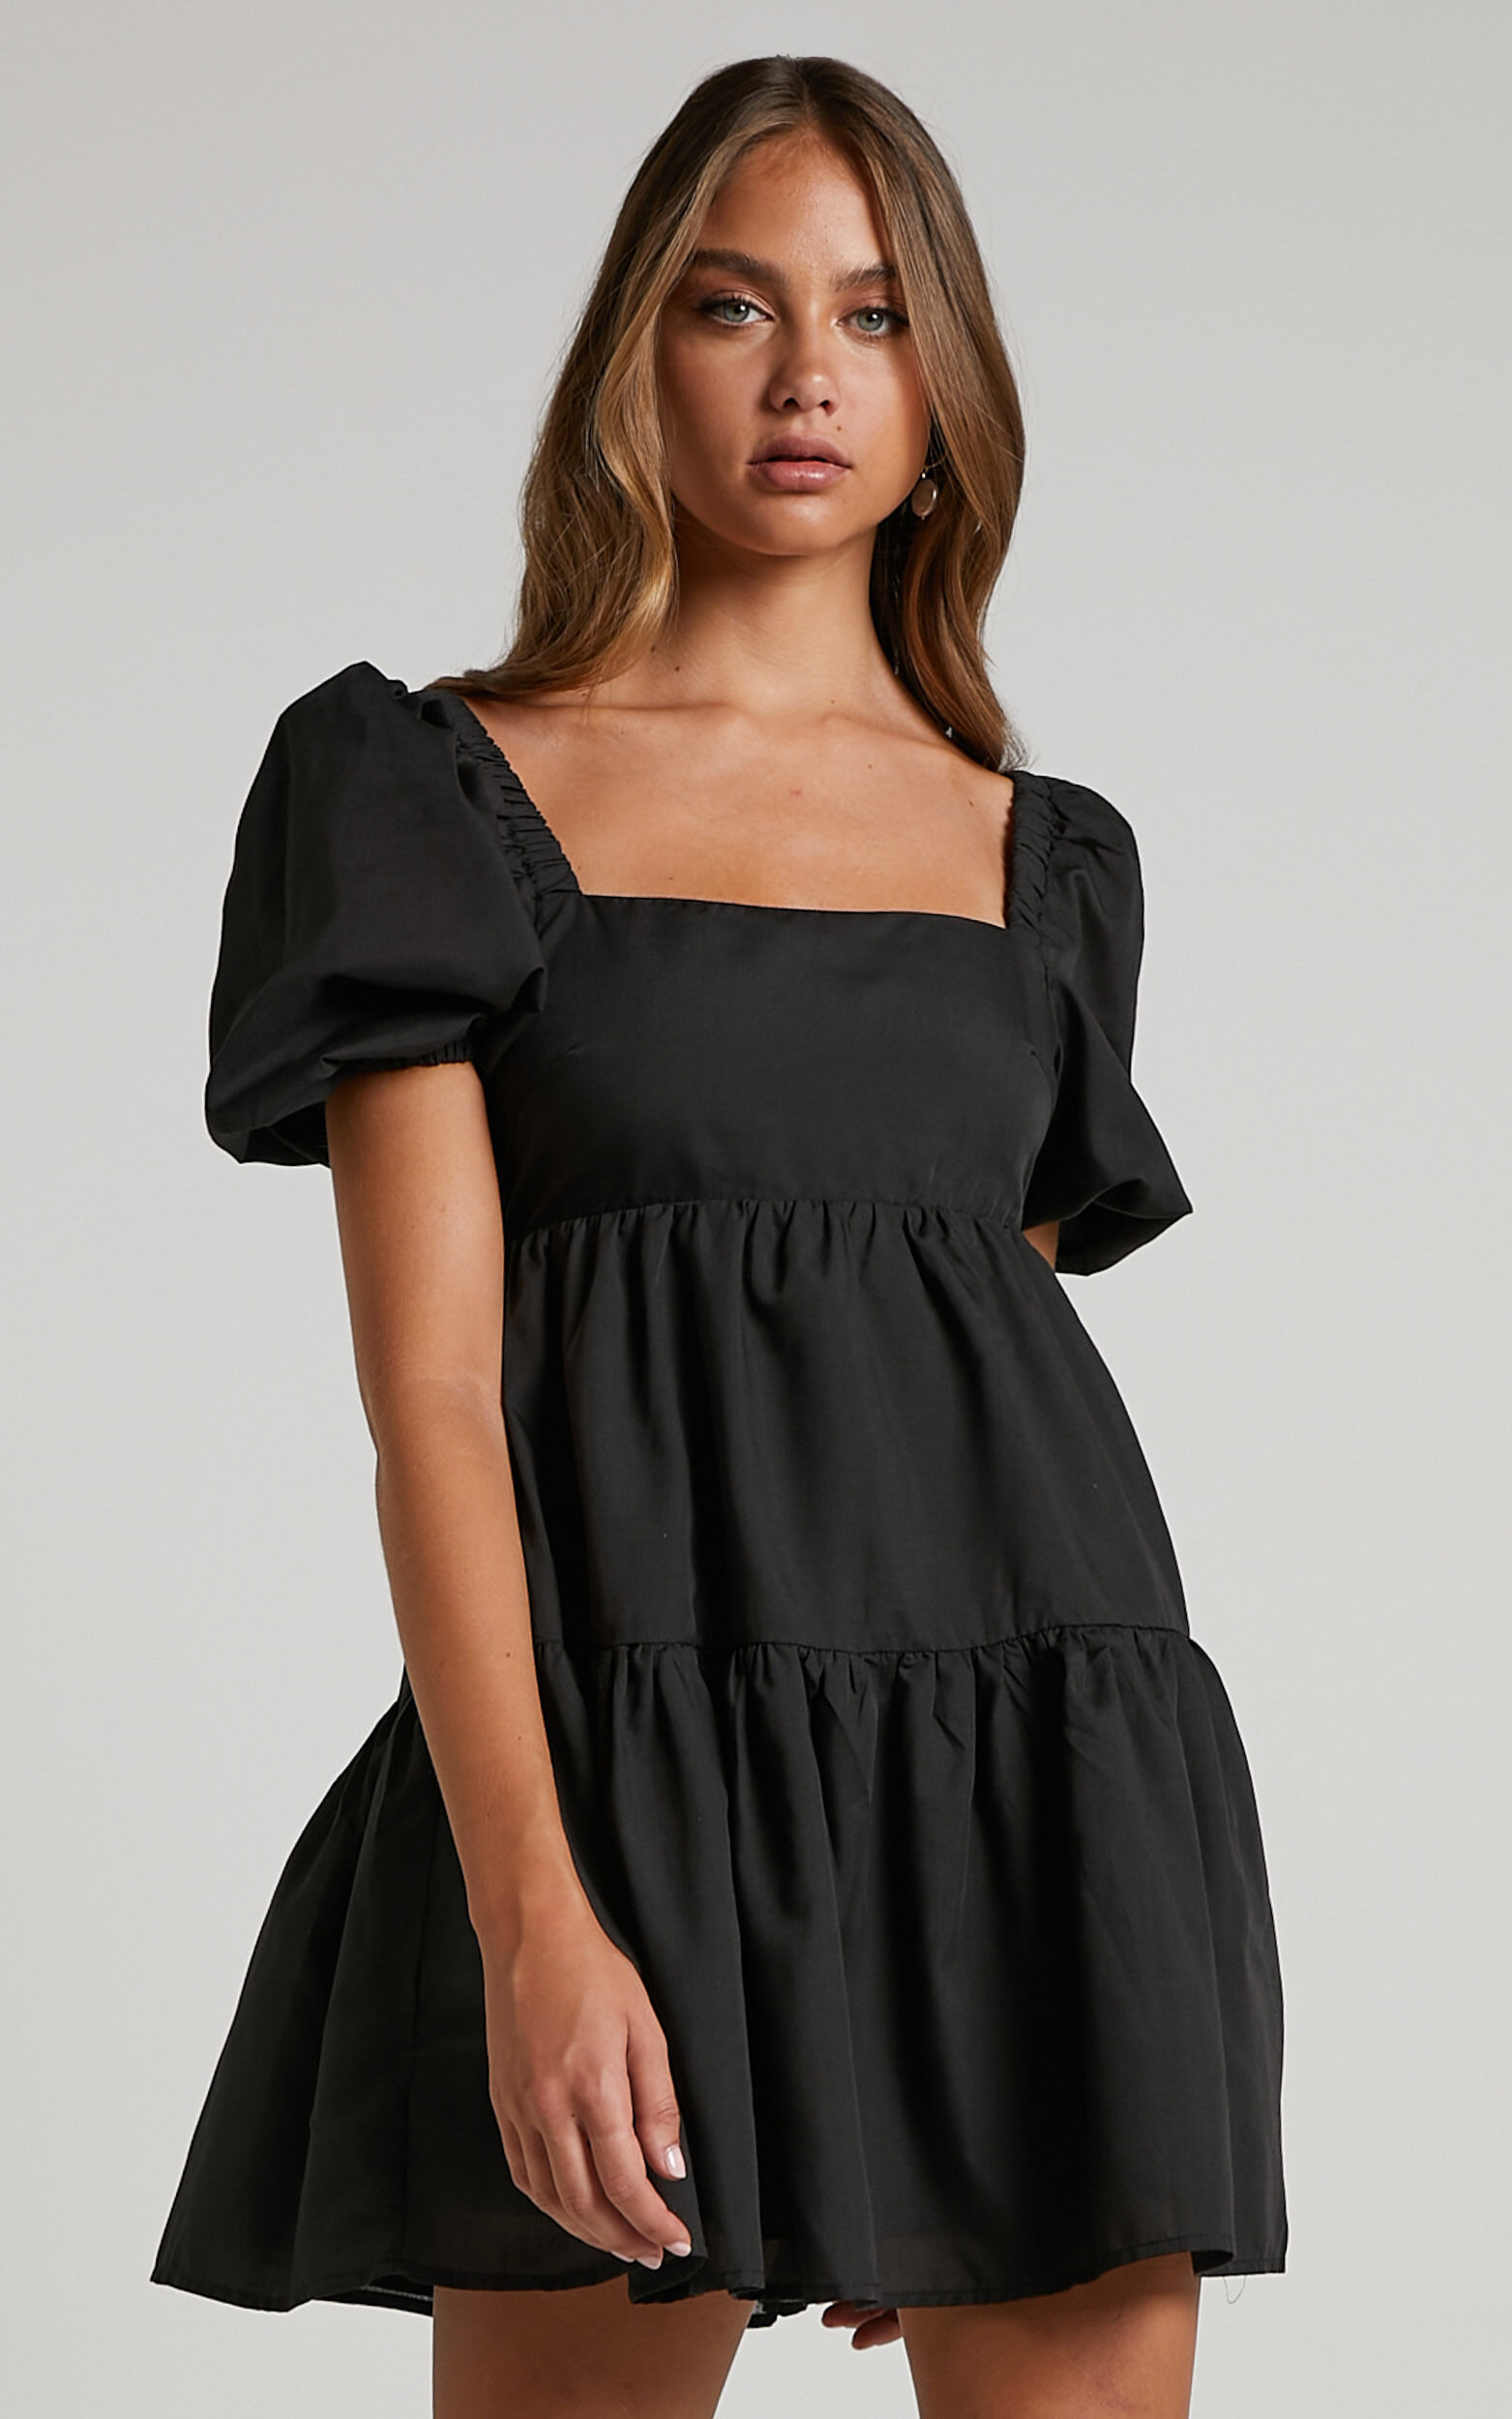 Hazel Mini Dress - Short Sleeve Tiered Tie Back Smock Dress in Black - 06, BLK1